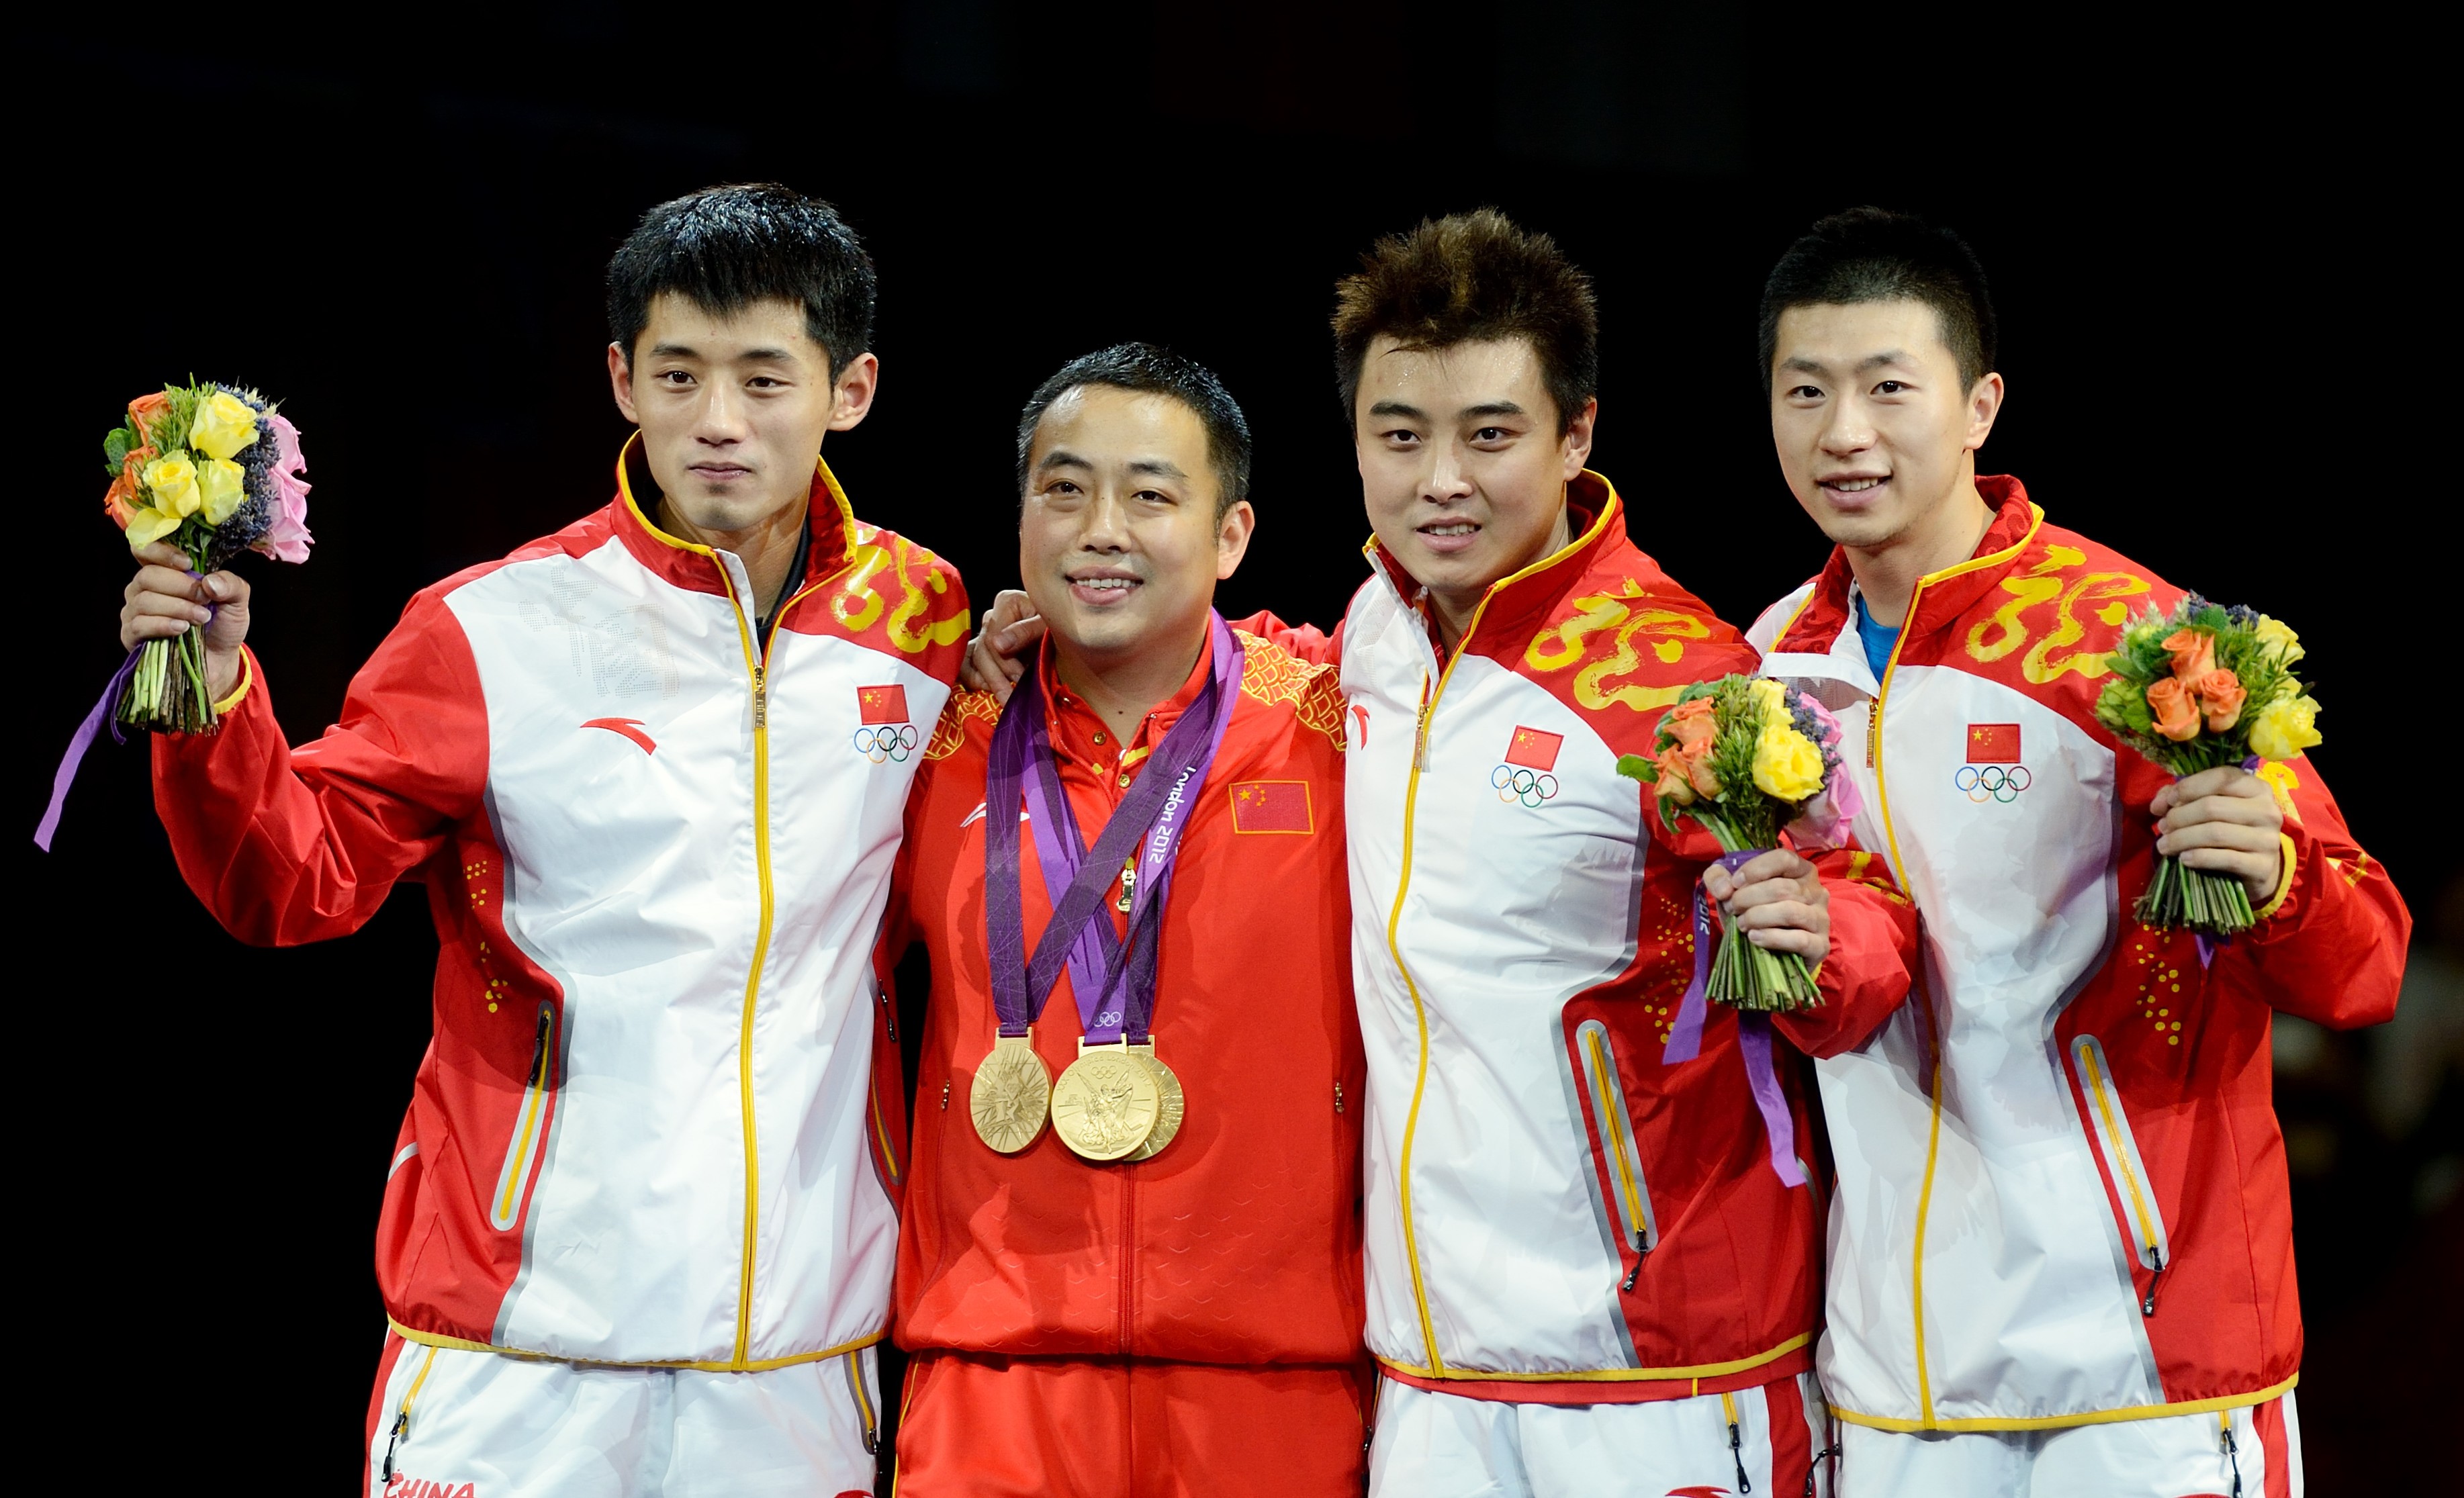 Table tennis stars Zhang Jike, coach Liu Guoliang, Wang Hao and Ma Long in 2012. Photo: Xinhua